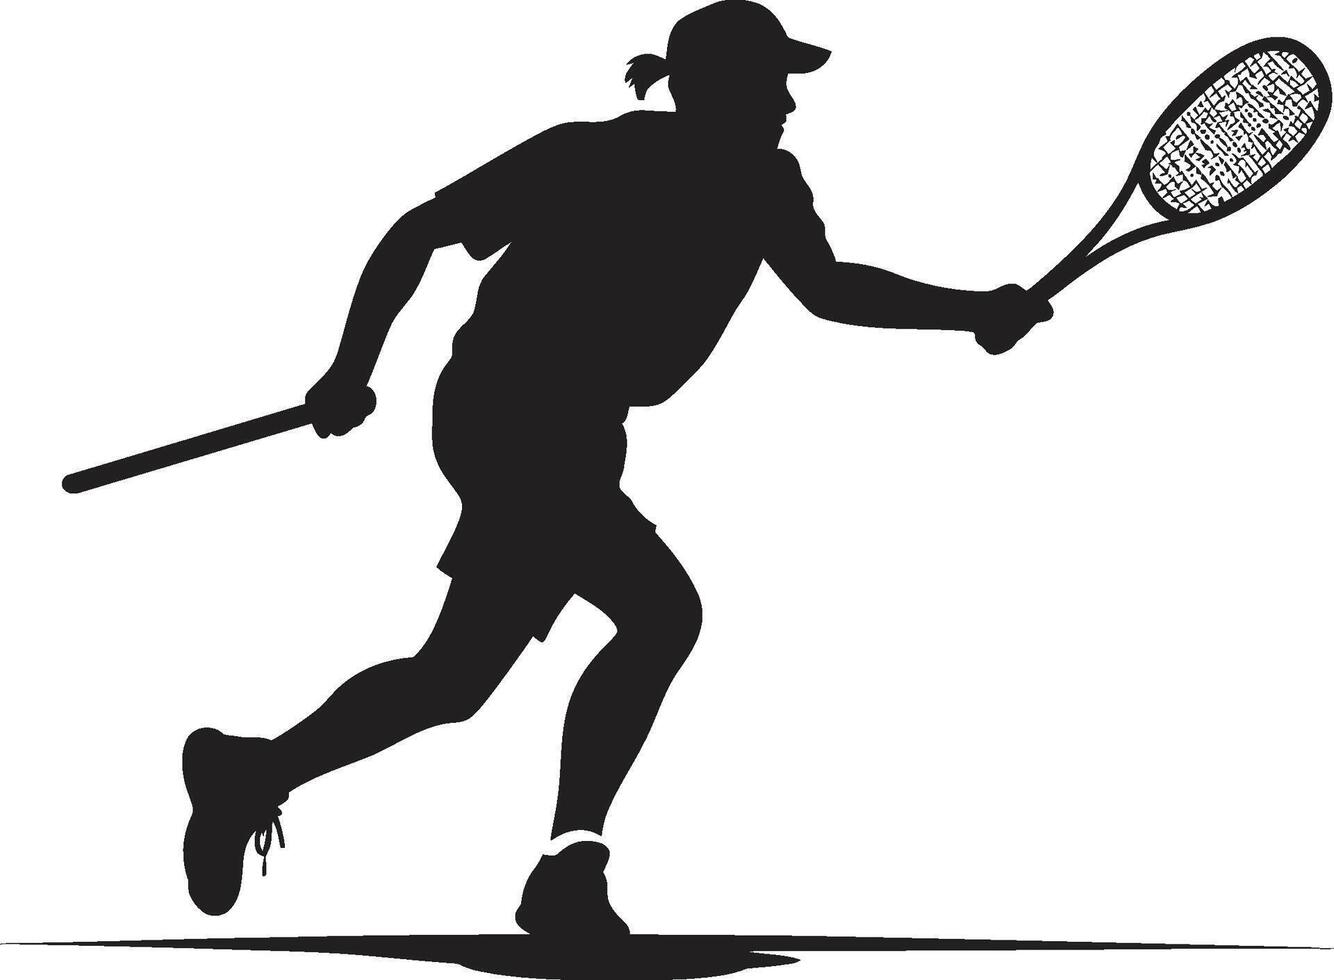 gracieux glam vecteur logo pour élégant tennis joueurs fracasser sirène femelle tennis joueur icône dans vecteur élégance